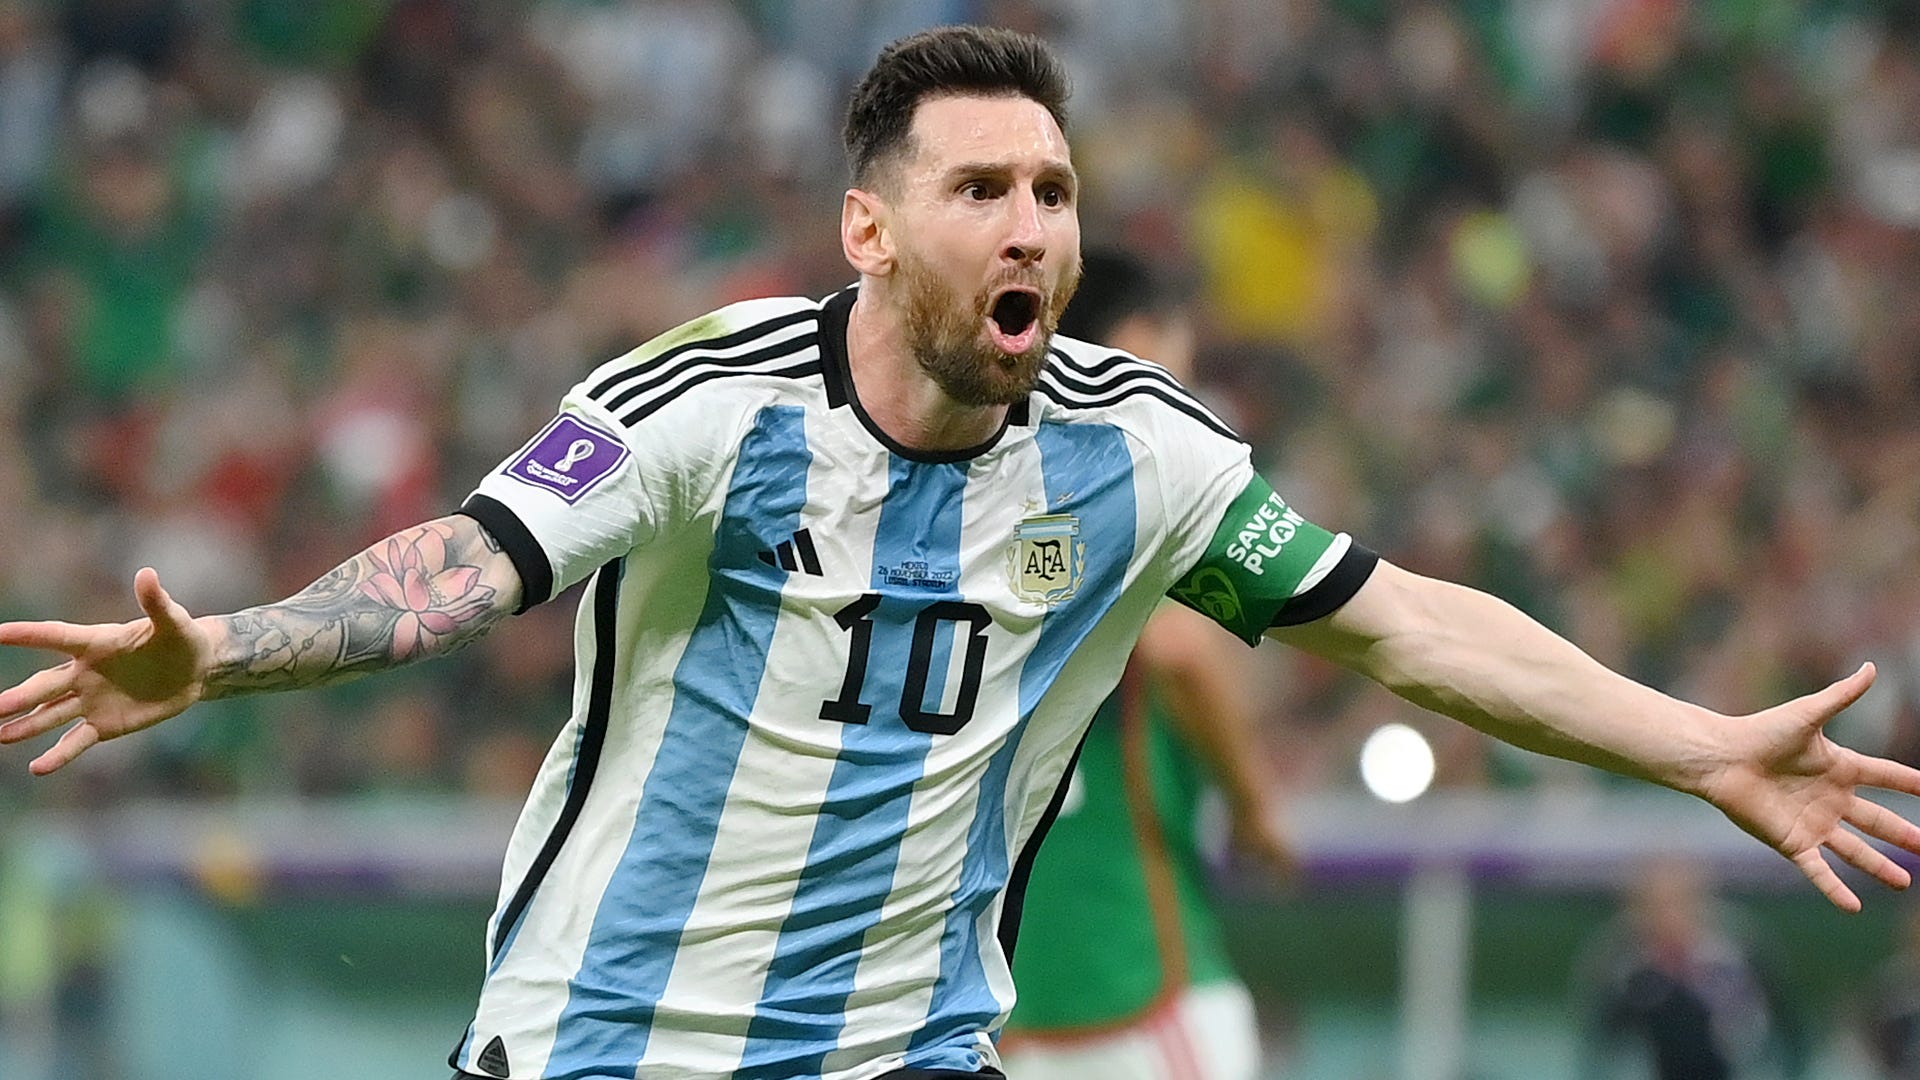 Bạn có biết rằng Argentina đang chuẩn bị mạnh mẽ để đăng cai tổ chức Giải bóng đá World Cup trong tương lai không xa? Hãy cùng xem những hình ảnh về World Cup Bid của Argentina, chứng kiến sự hăng say và nỗ lực của đất nước Nam Mỹ này trong việc xây dựng một giải đấu bóng đá hoàn hảo và đẳng cấp!